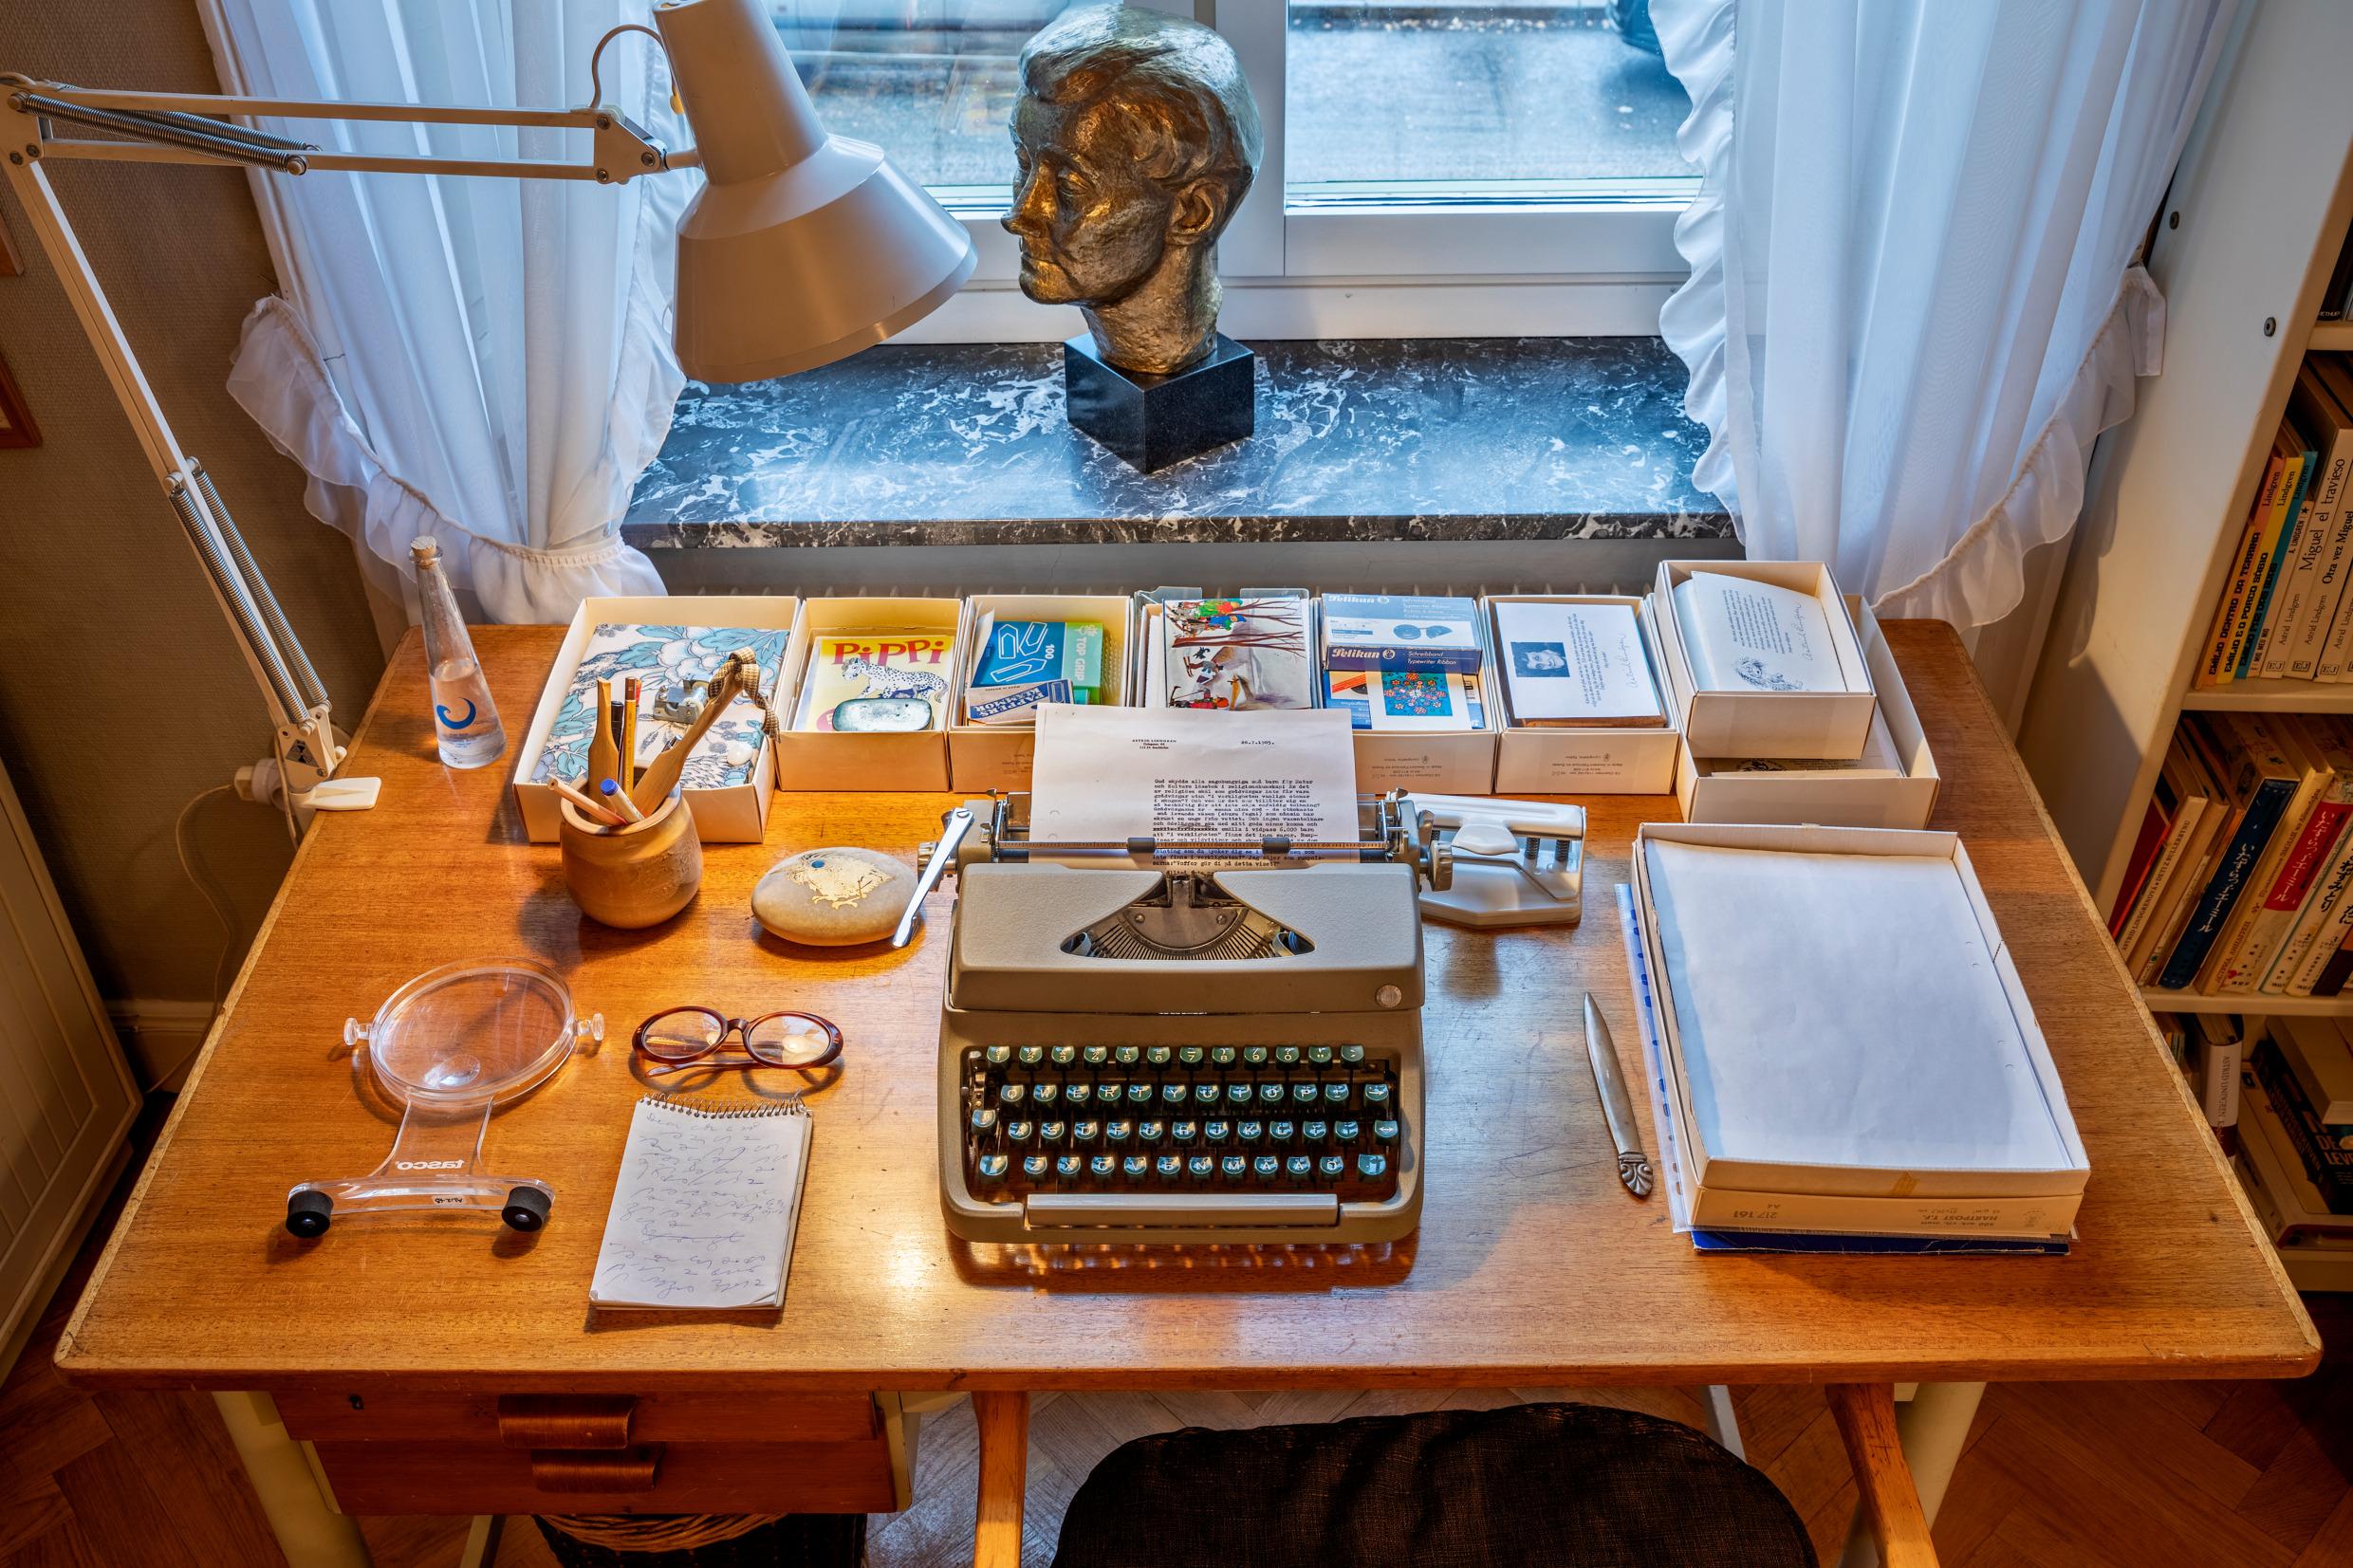 مكتب به مصباح للقراءة وآلة كاتبة وكتب وأشياء أخرى.